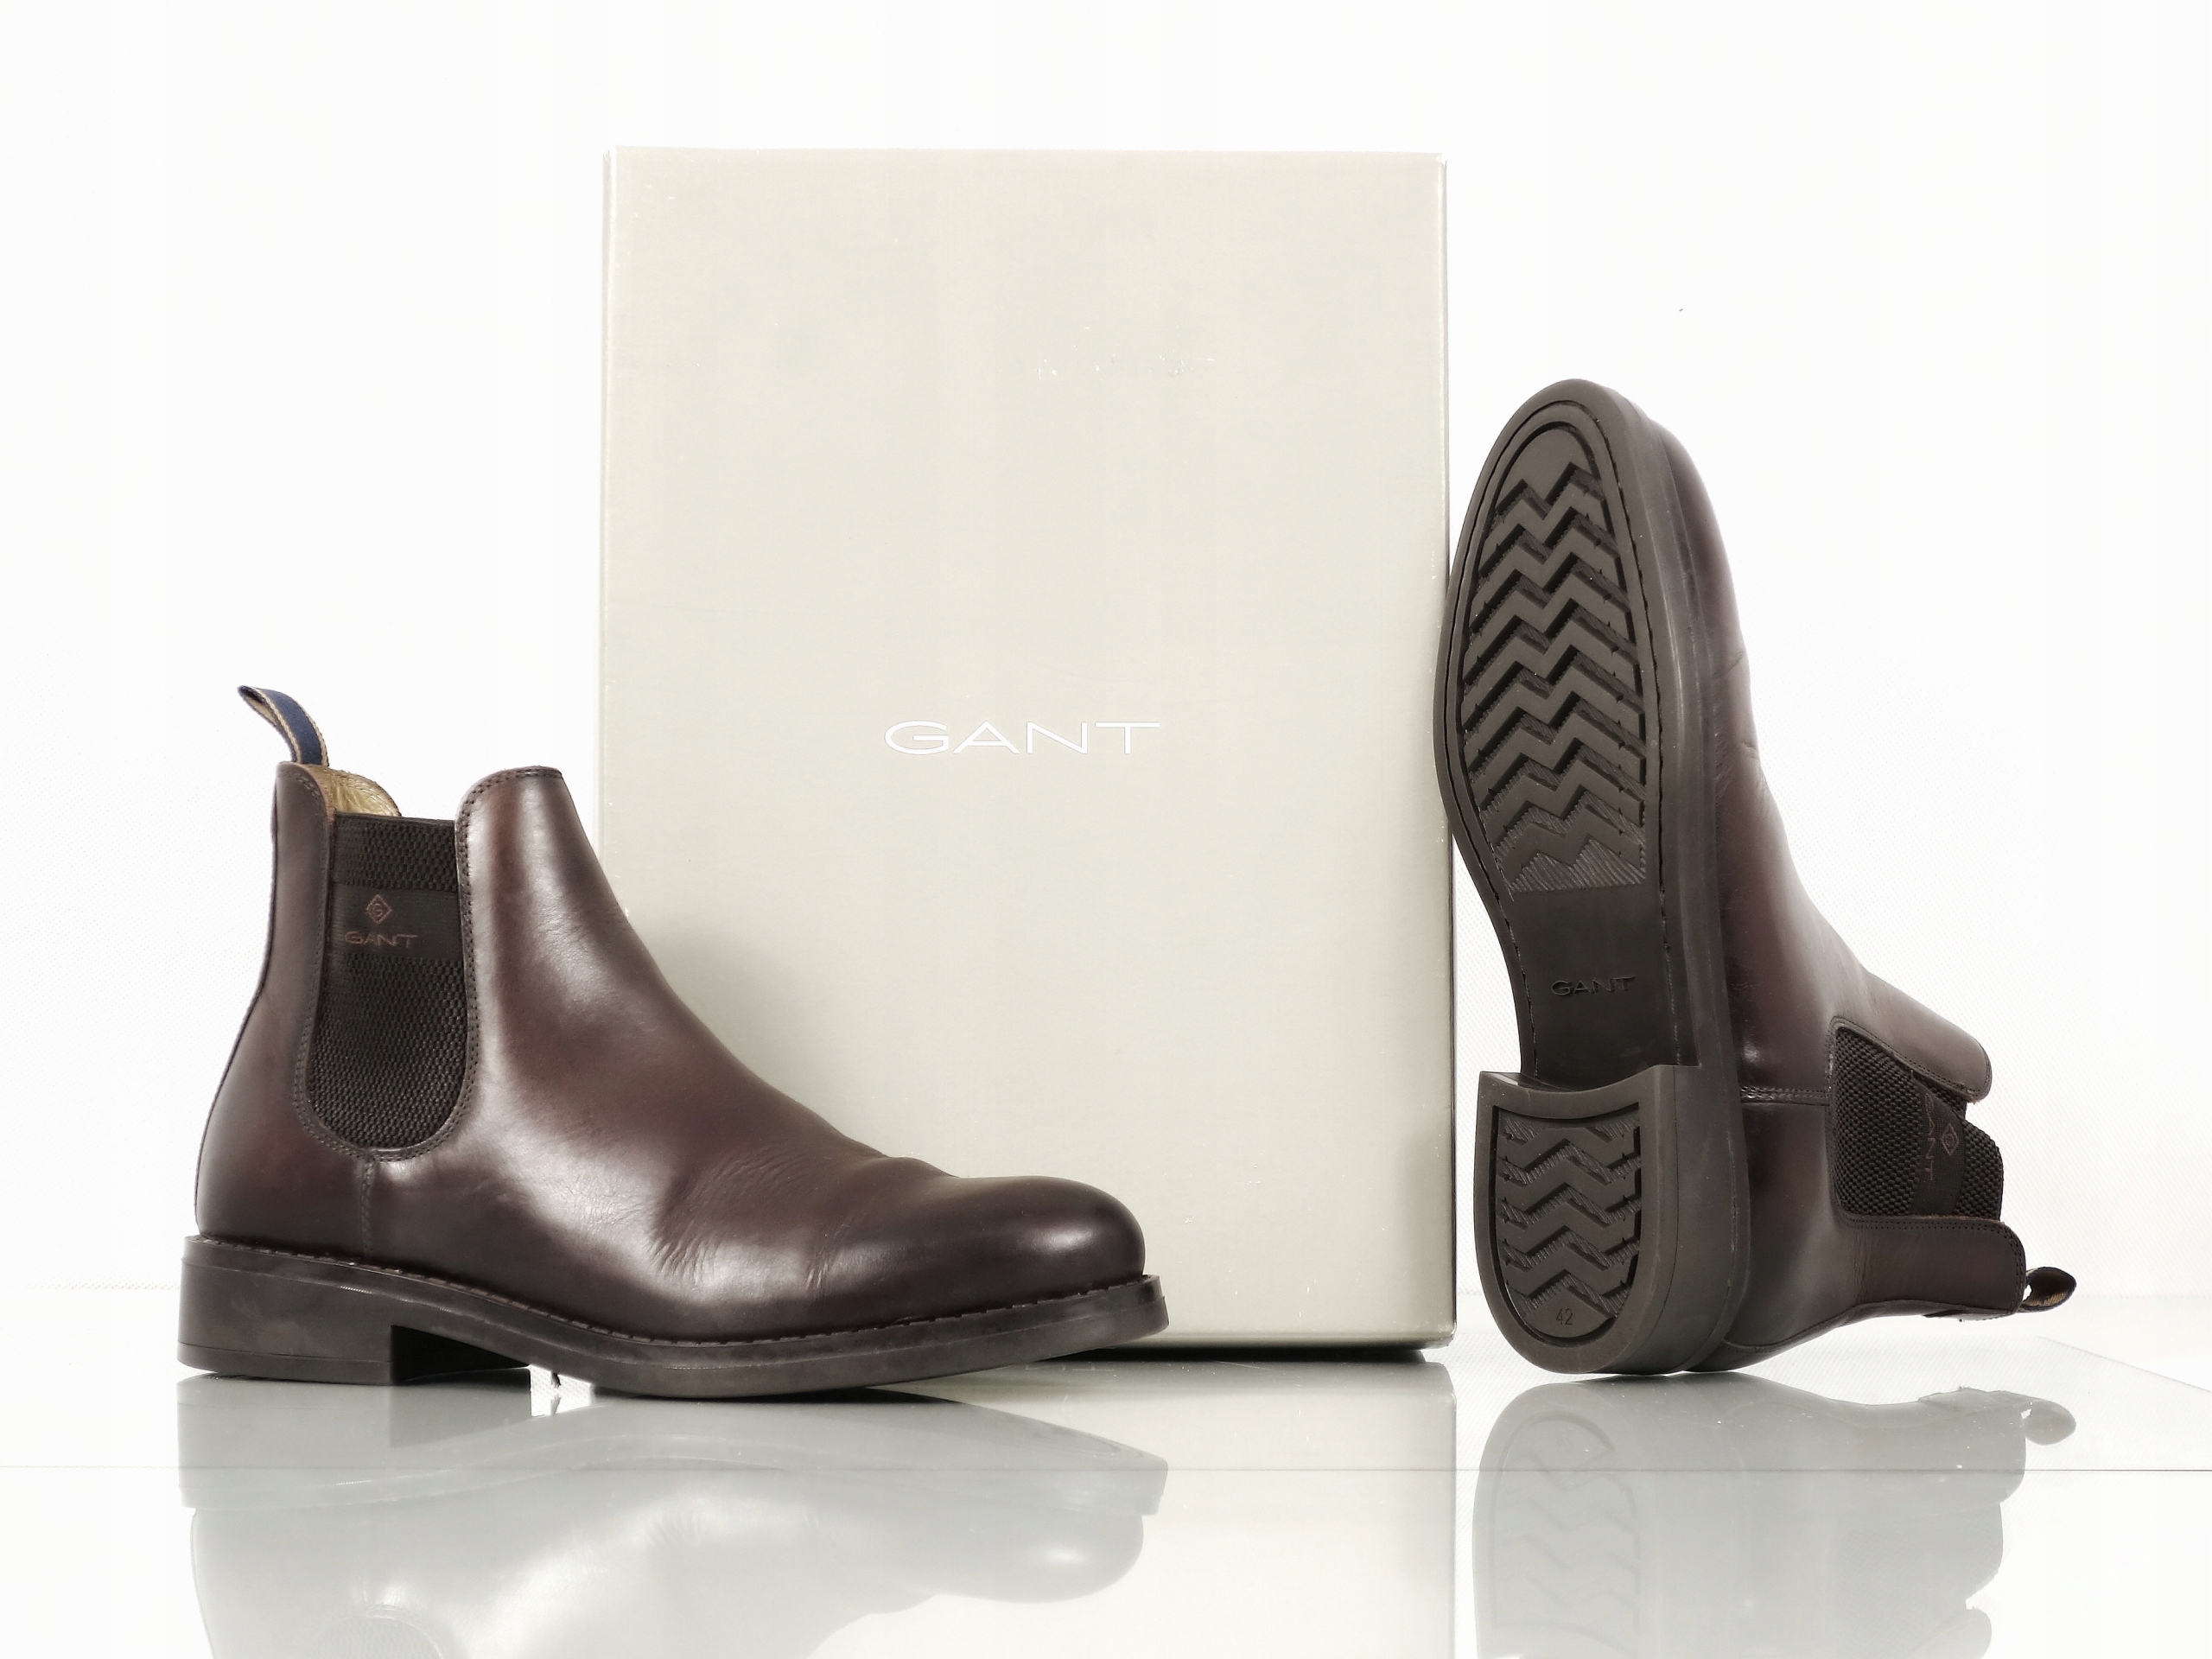 Obuwie Buty biznesowe Loafersy Gant Pantofel br\u0105zowy W stylu biznesowym 